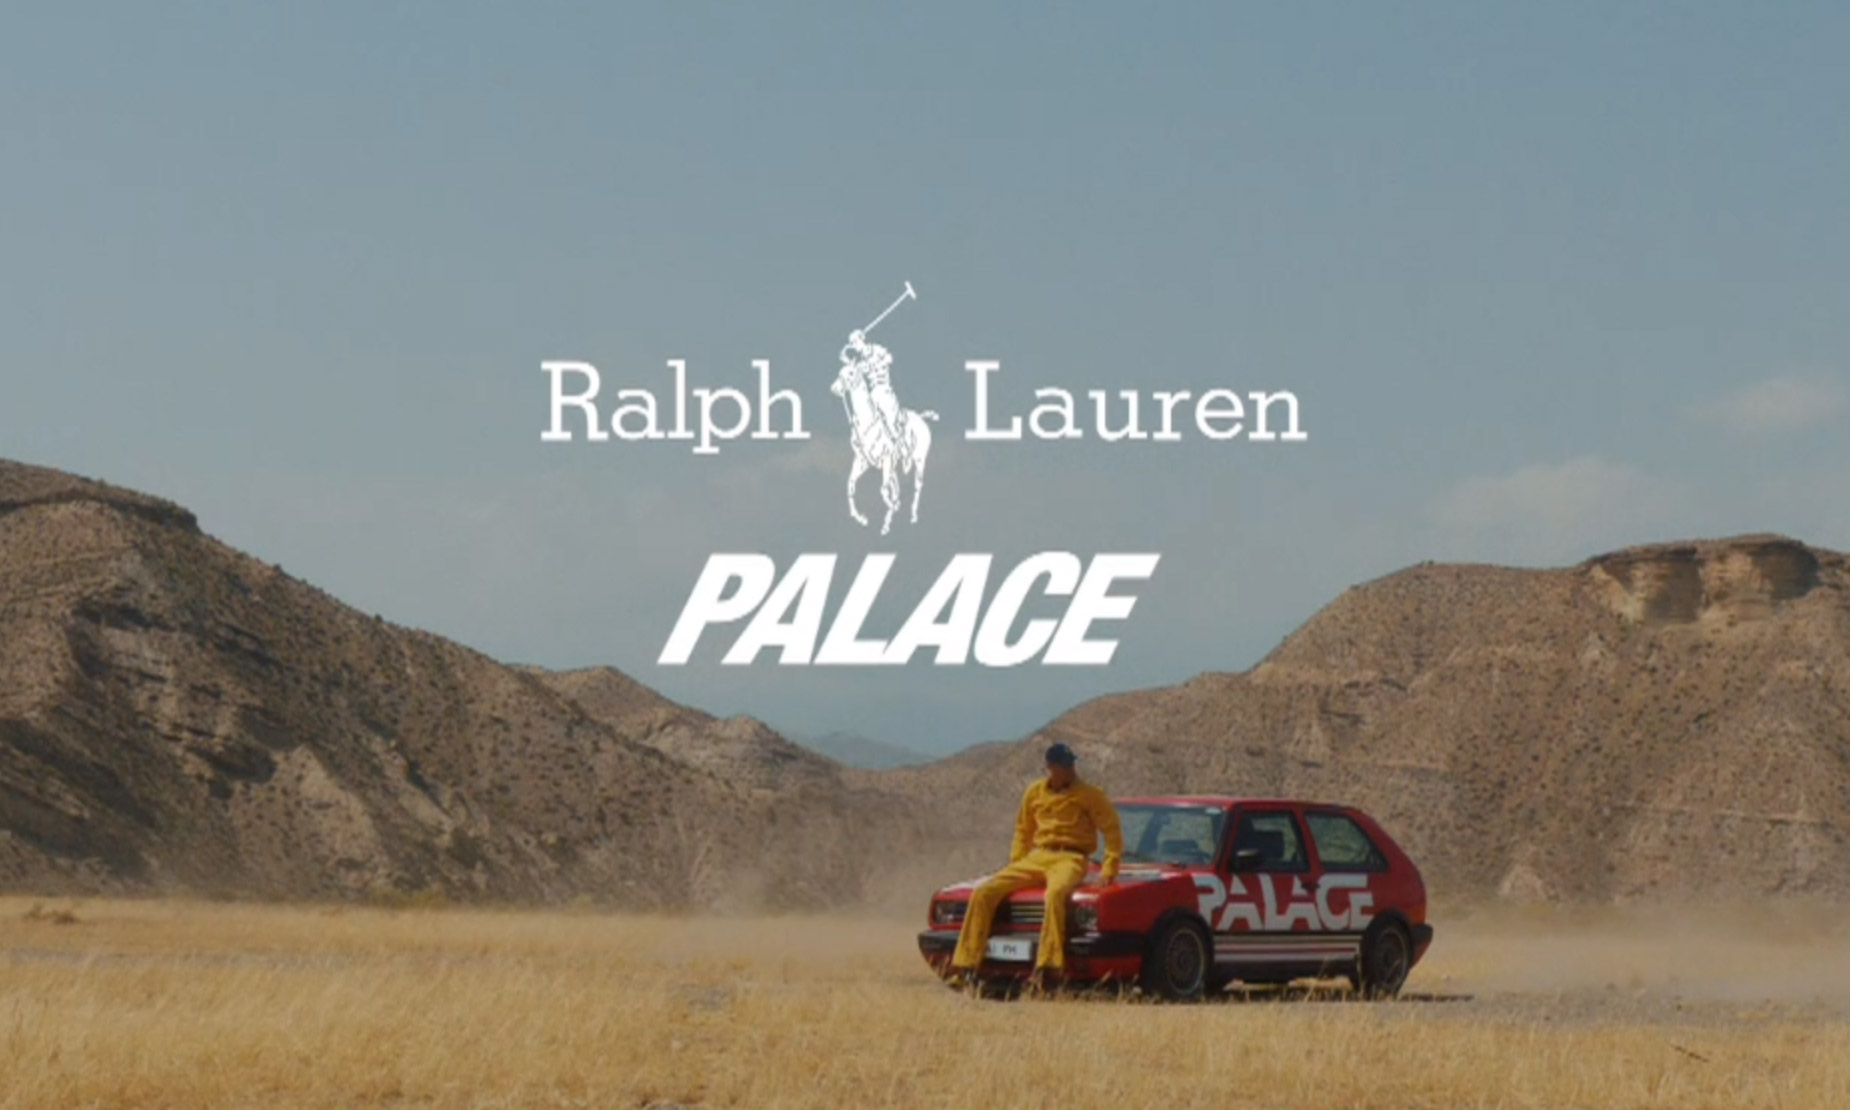 PALACE x Polo Ralph Lauren 联名系列正式公布